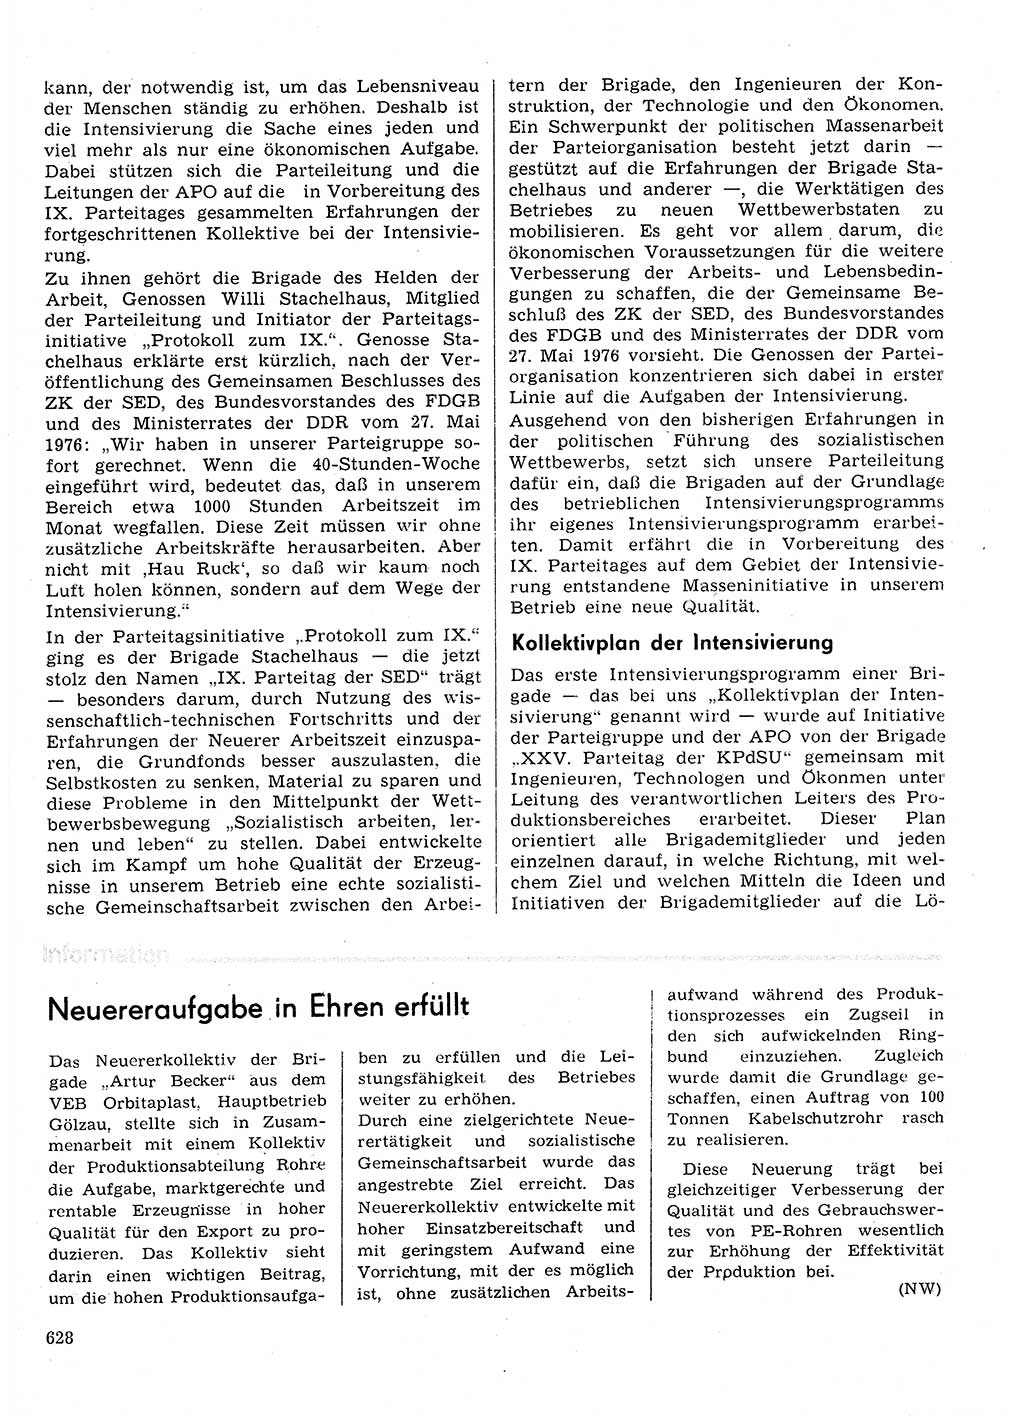 Neuer Weg (NW), Organ des Zentralkomitees (ZK) der SED (Sozialistische Einheitspartei Deutschlands) für Fragen des Parteilebens, 31. Jahrgang [Deutsche Demokratische Republik (DDR)] 1976, Seite 628 (NW ZK SED DDR 1976, S. 628)